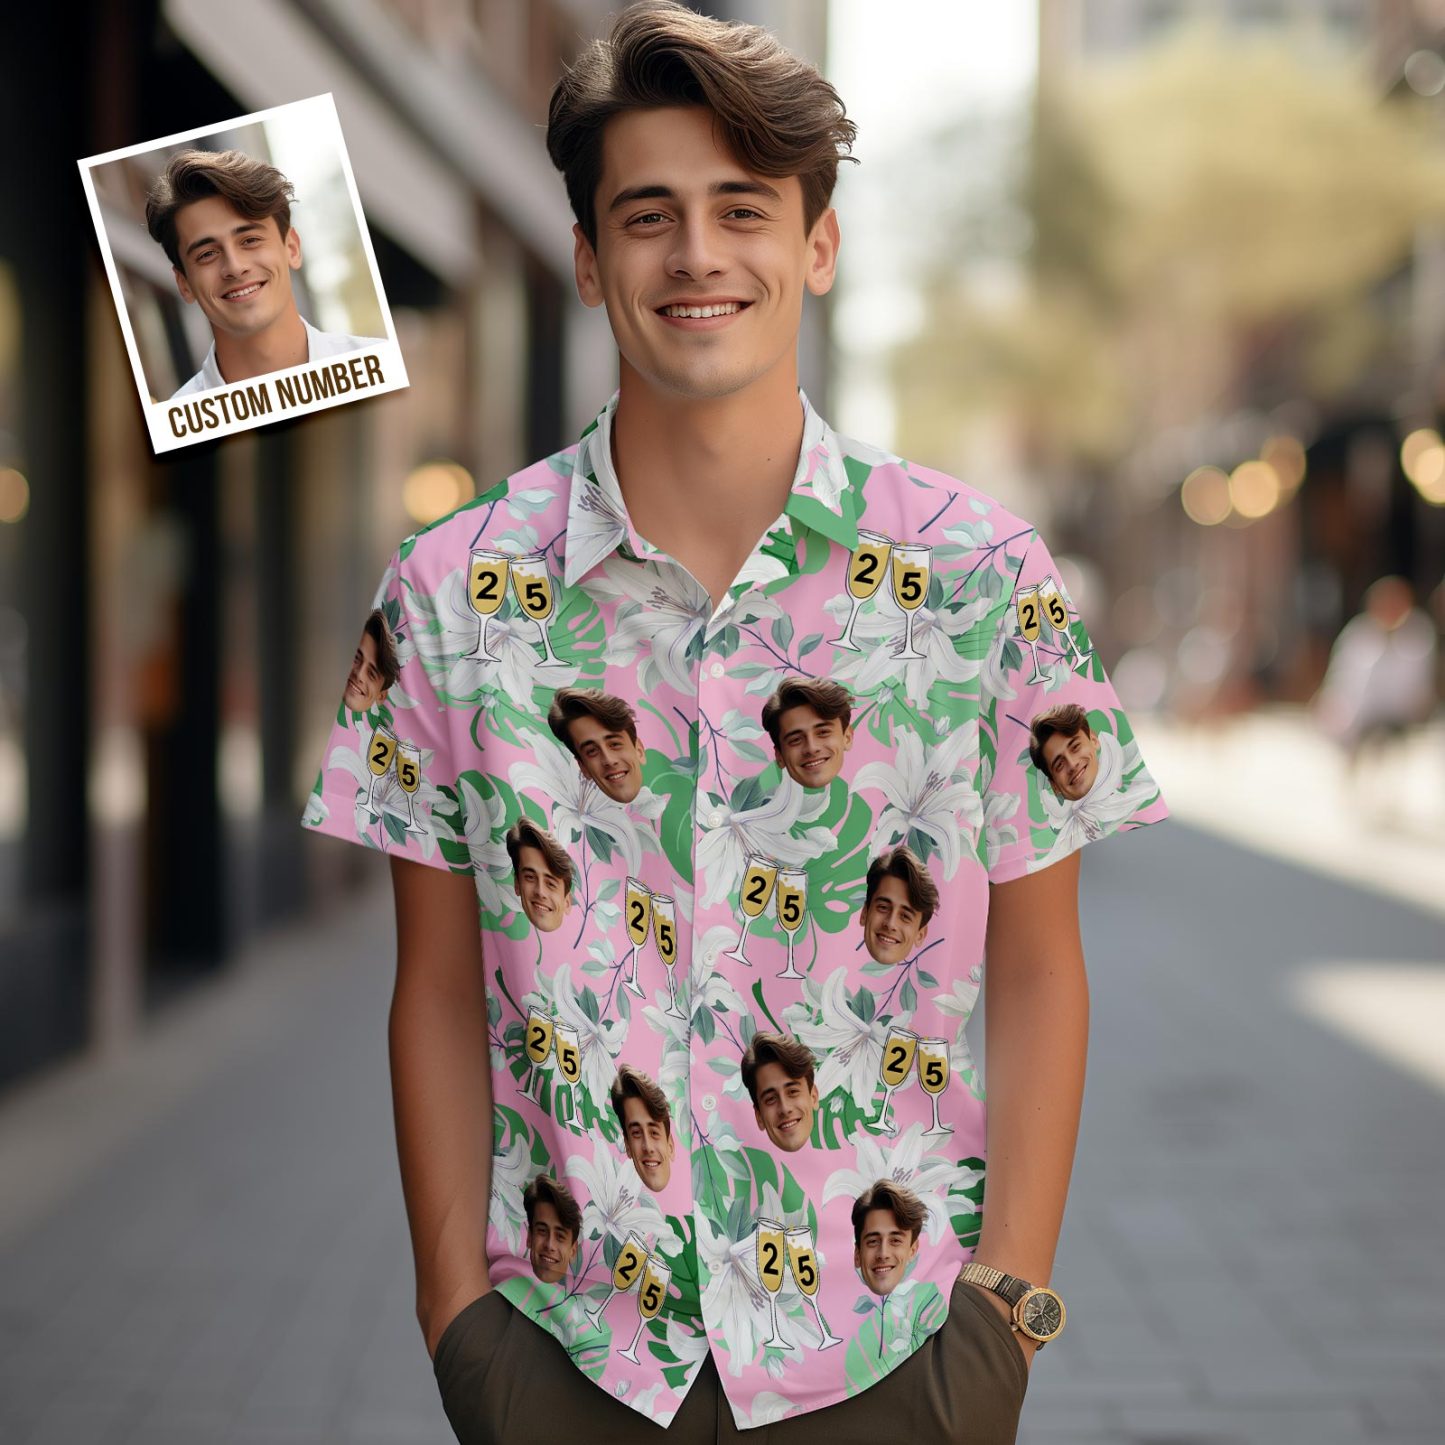 Benutzerdefinierte Gesichts-hawaii-shirt-nummer Im Weinglas, Rosa Und Grüne Ärmel, Gesicht-hawaii-shirt-geschenk Für Ihn - GesichtSocken